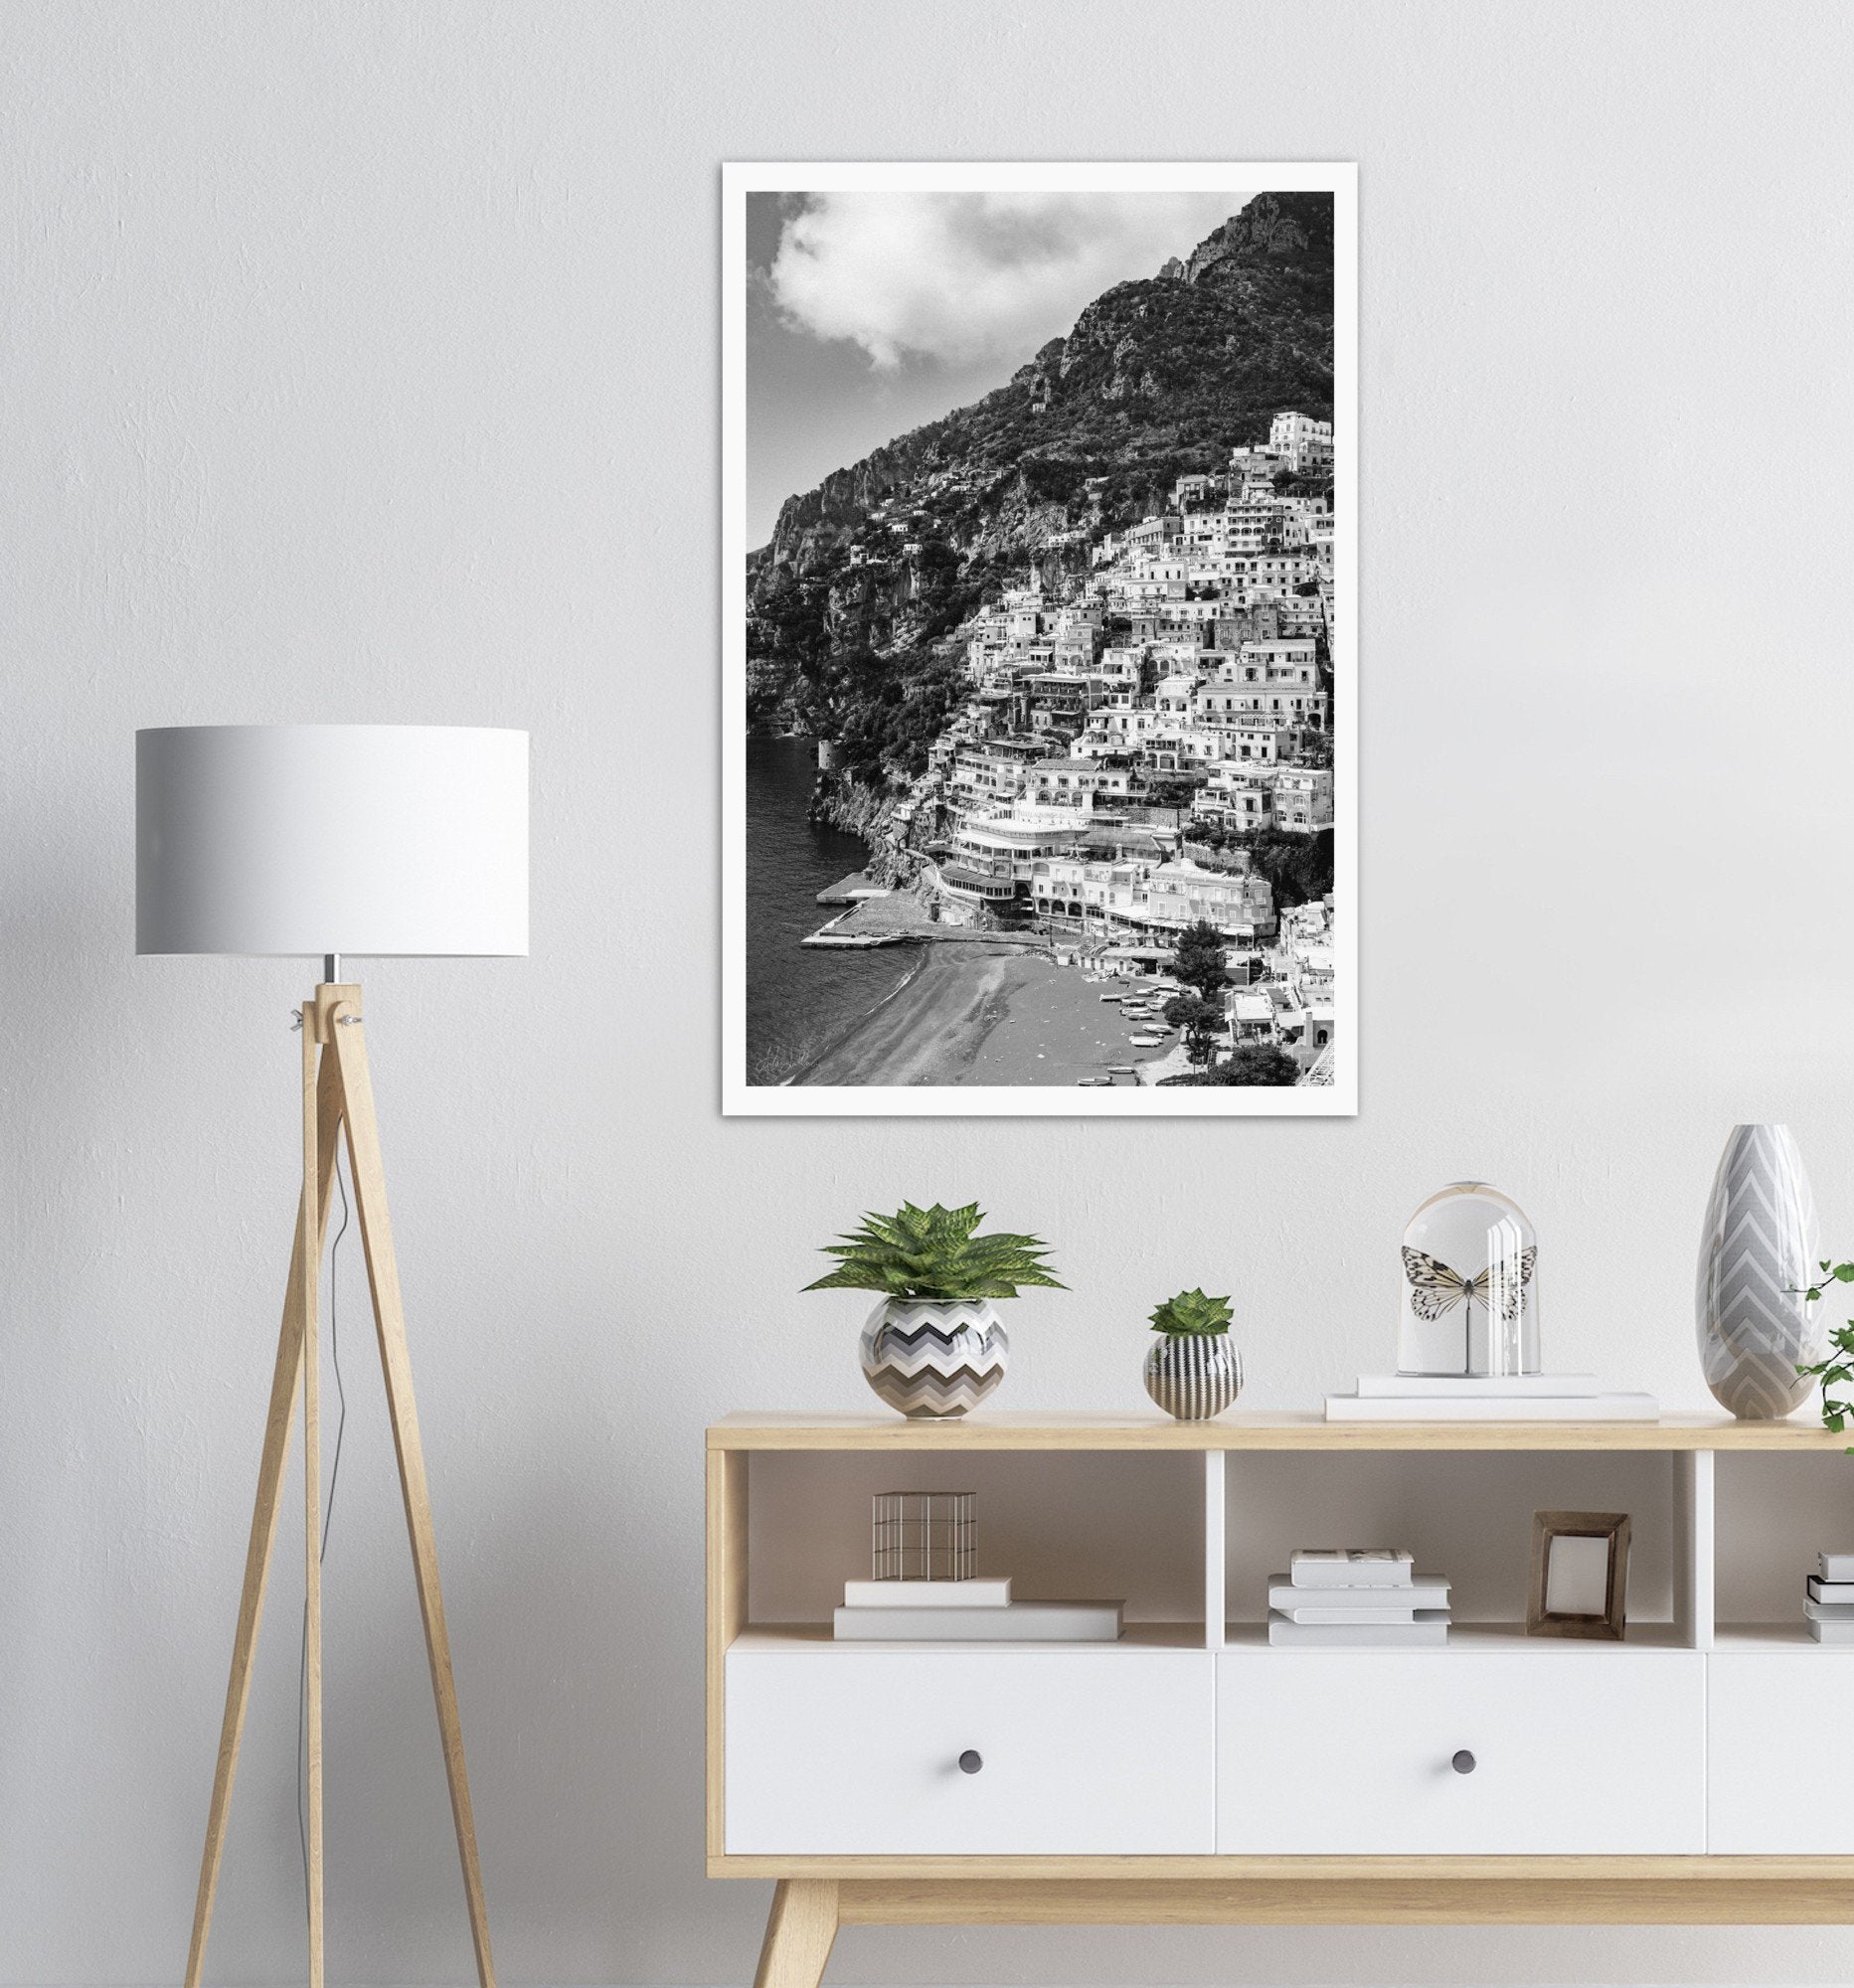 "The Cliff" Positano B&W Premium Semi-Glossy Print